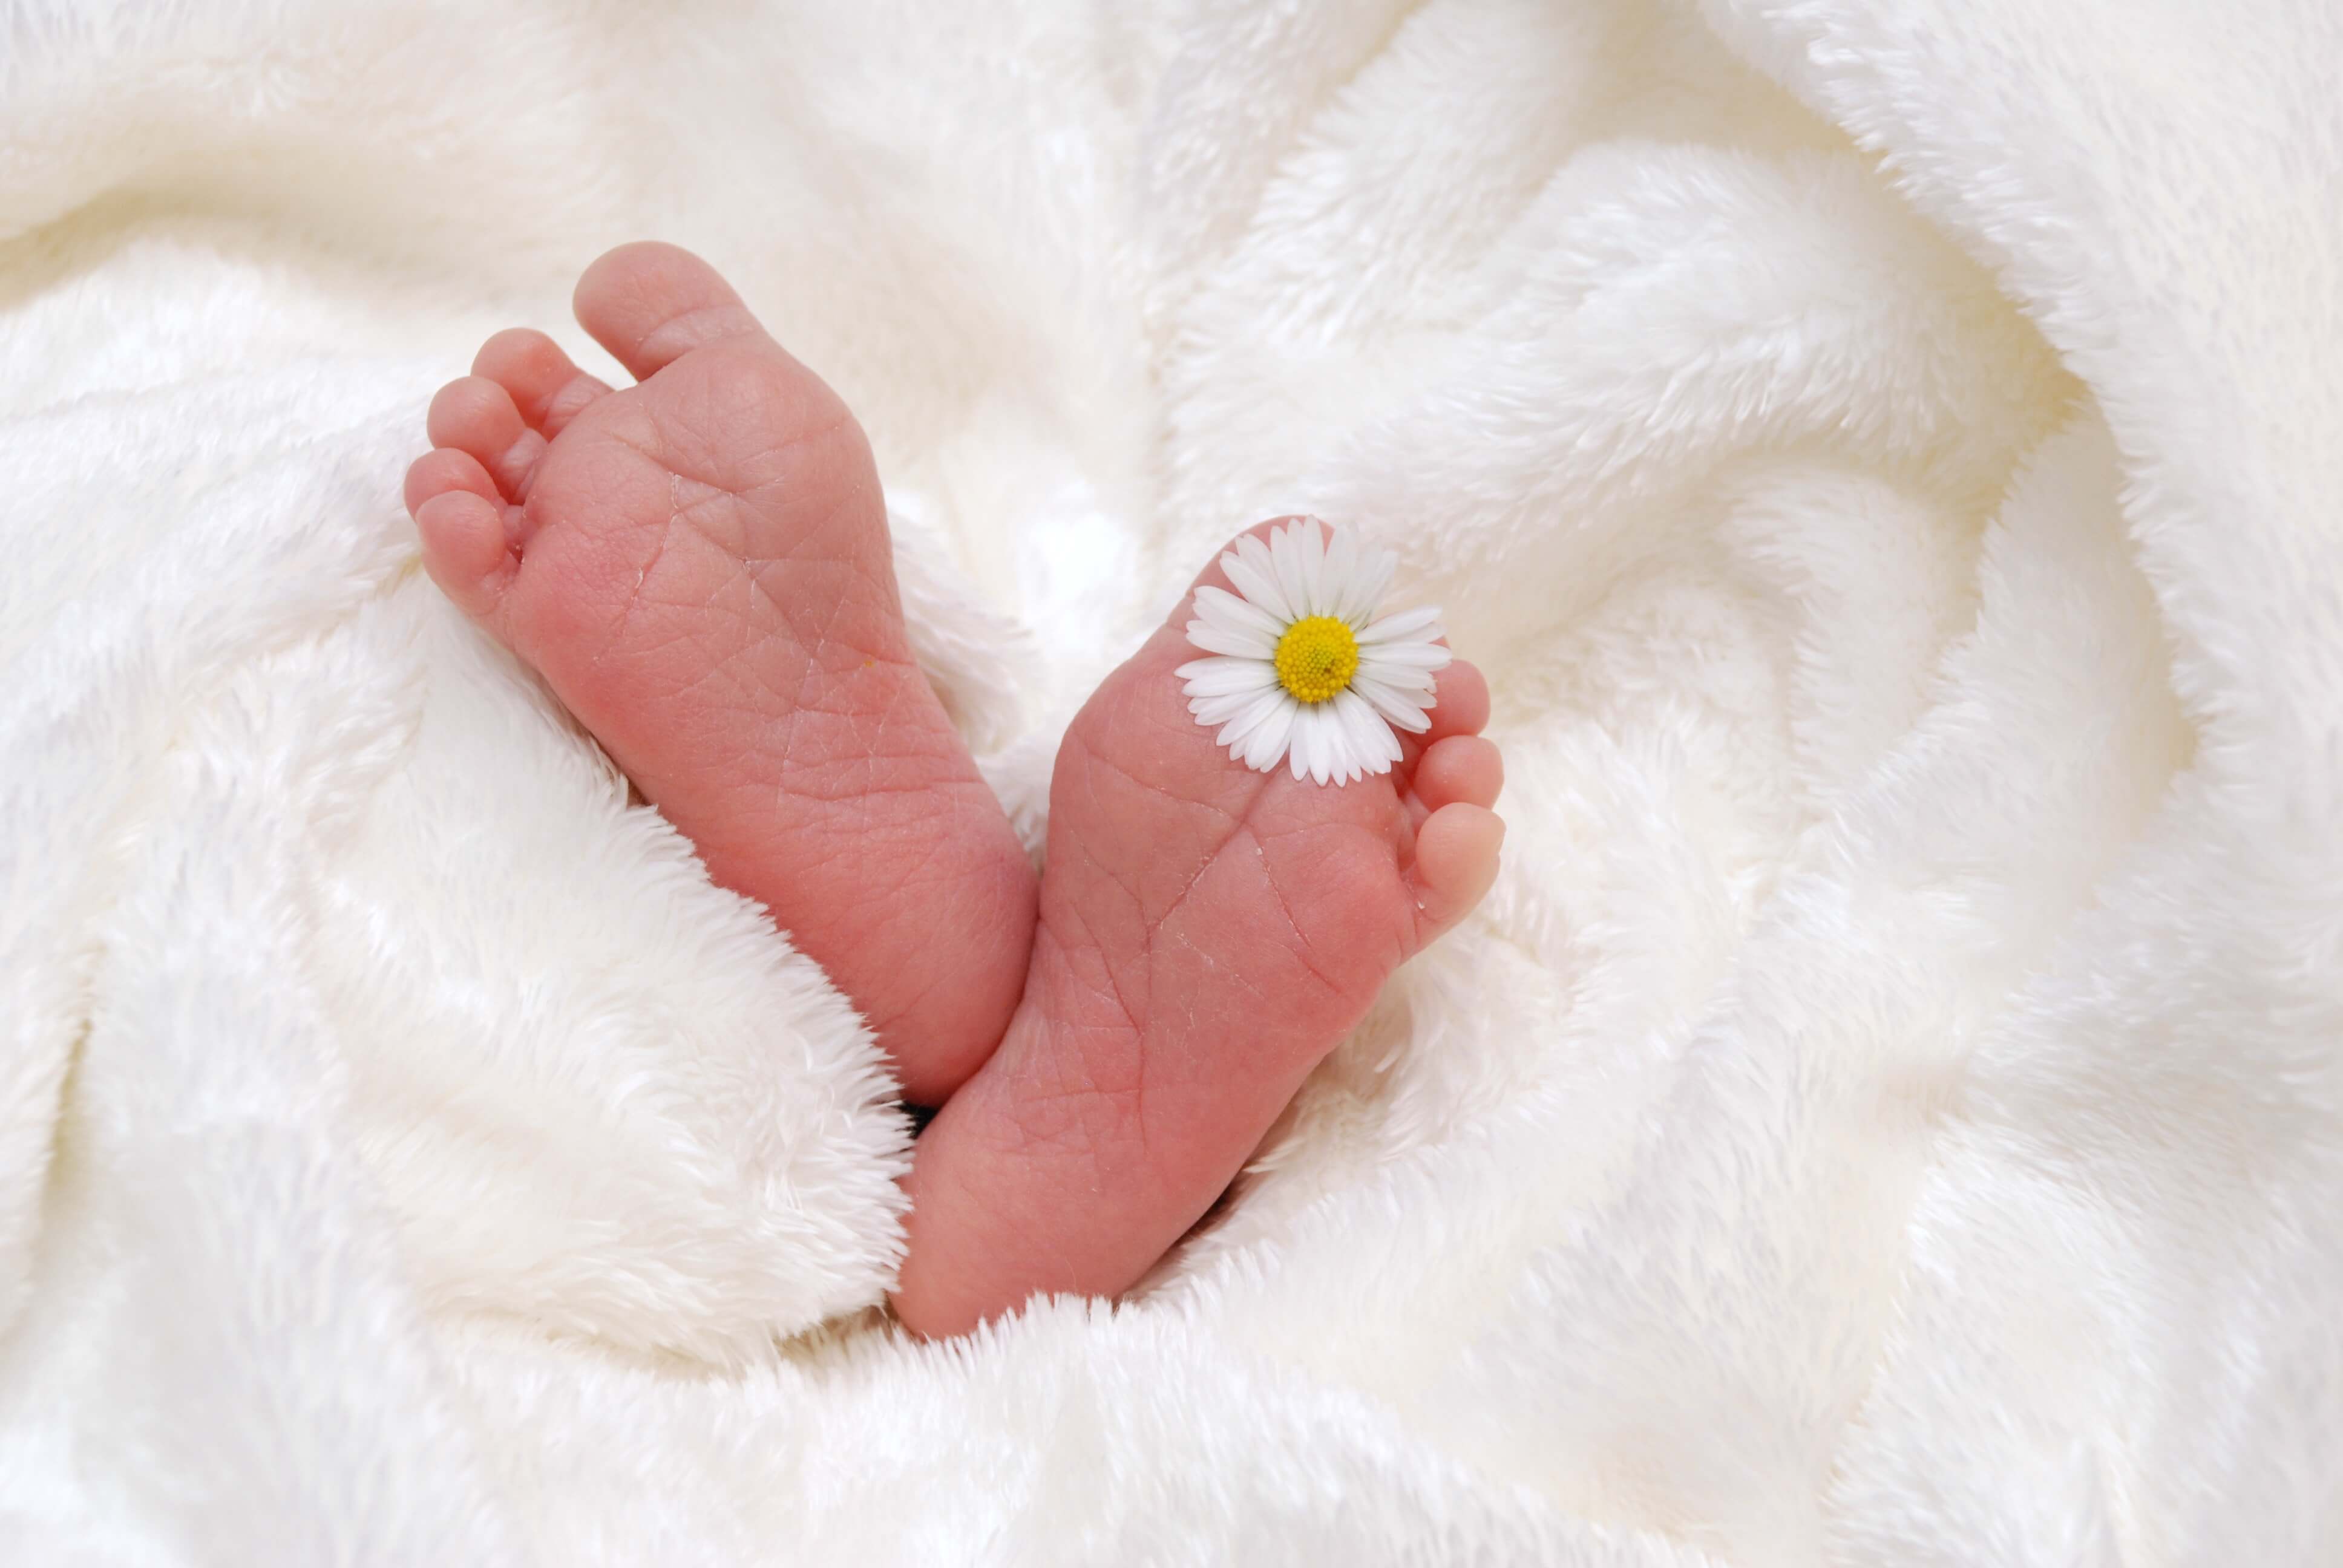 pieds de bébé dans des draps avec une fleur entre les orteils